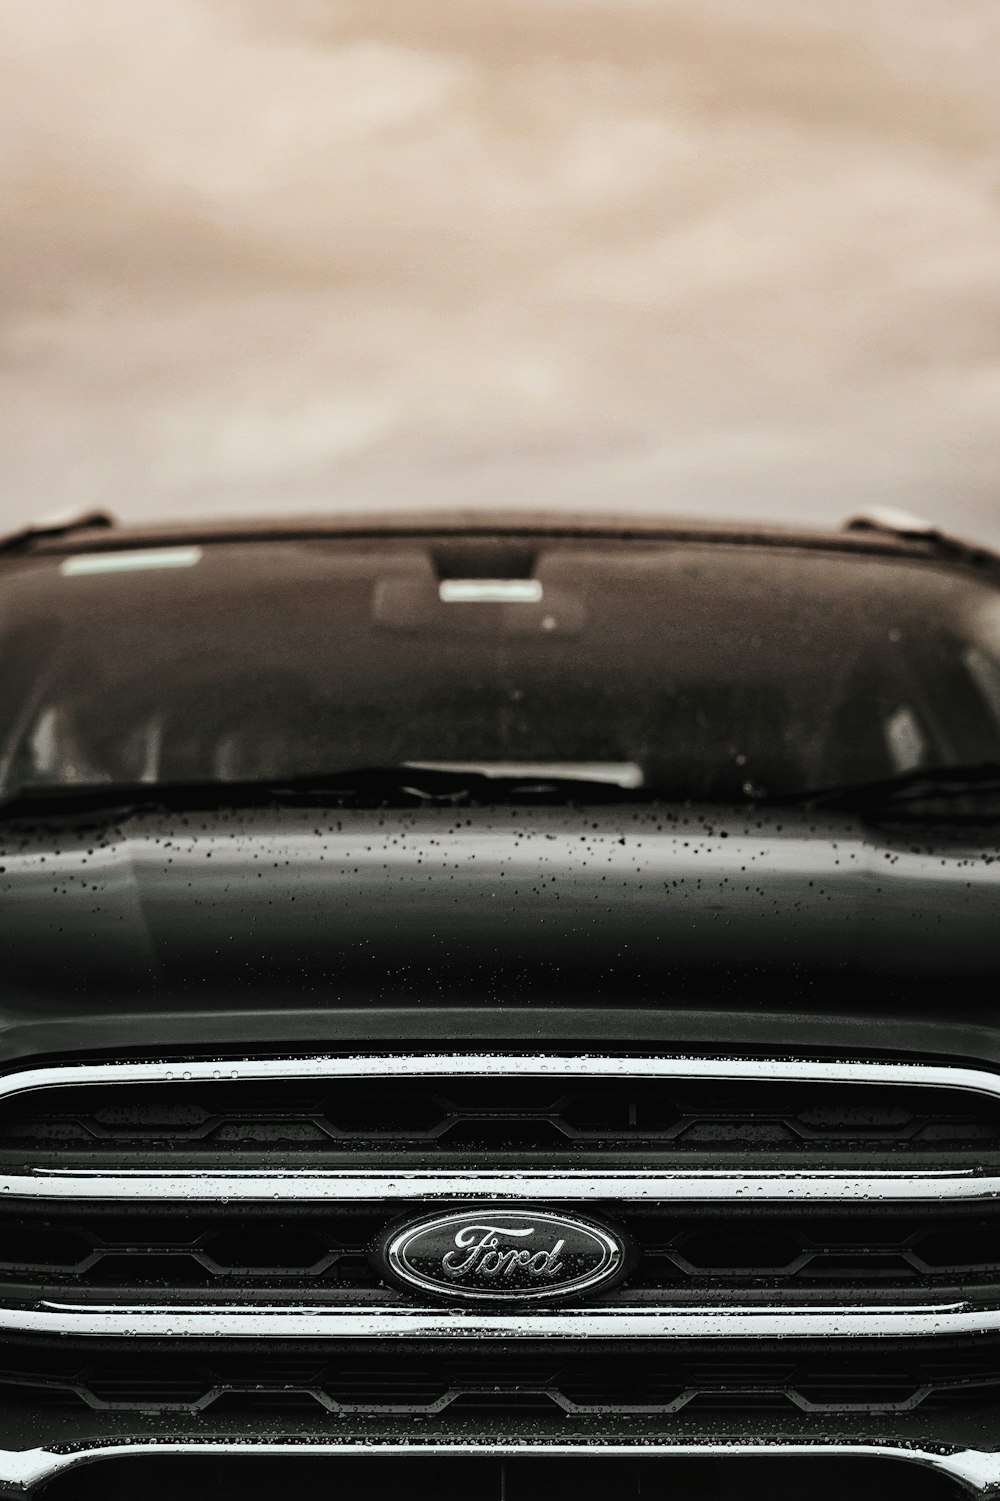 veicolo Ford nero sotto il cielo nuvoloso